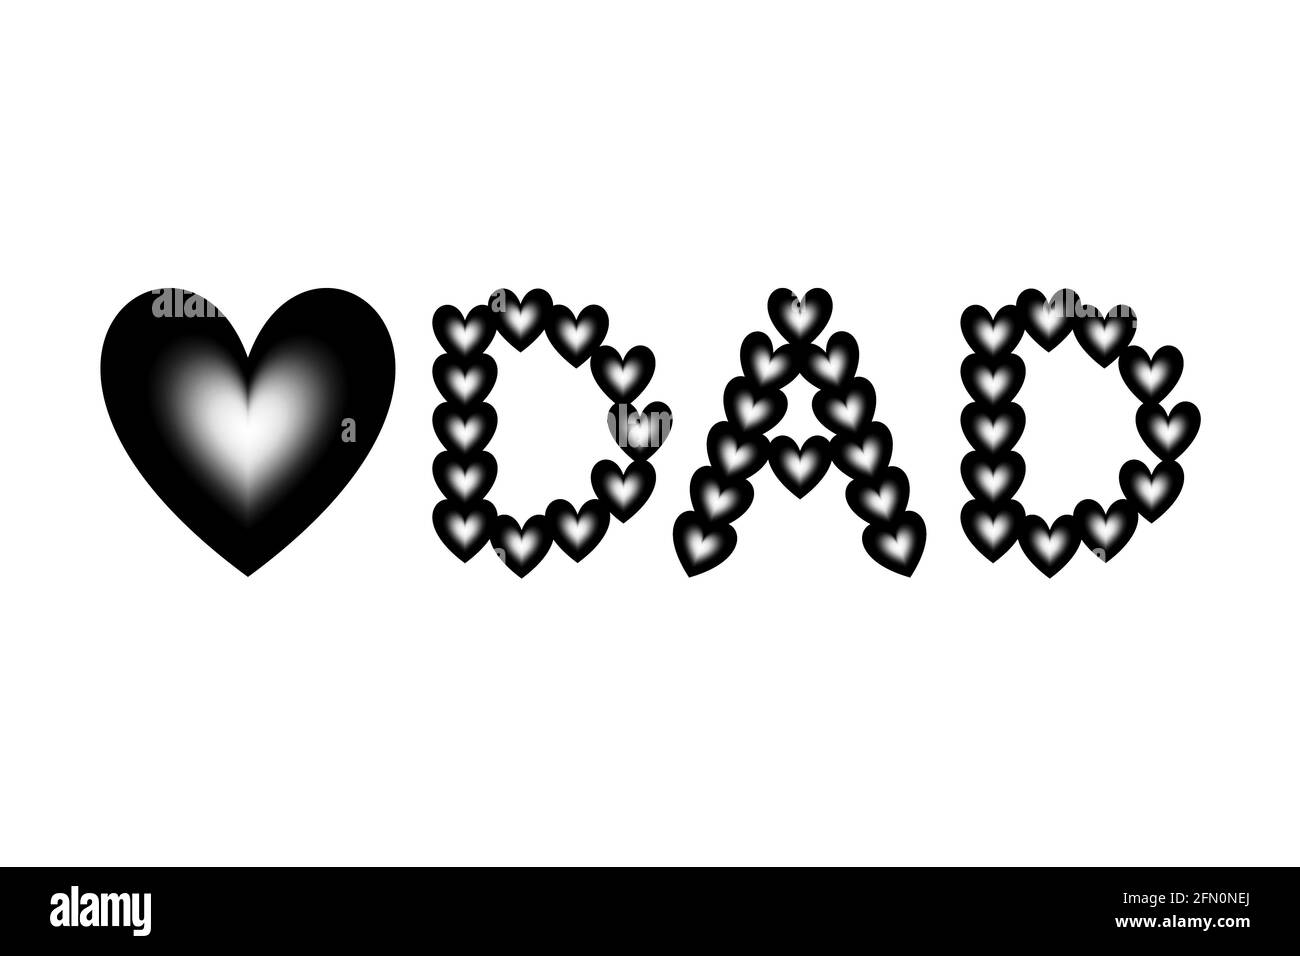 Schwarz-weiße Herzformen mit Farbverlauf sind in das Liebessymbol und das Wort „PAPA“ eingeordnet. Konzept für Vatertag Konzept. Stockfoto